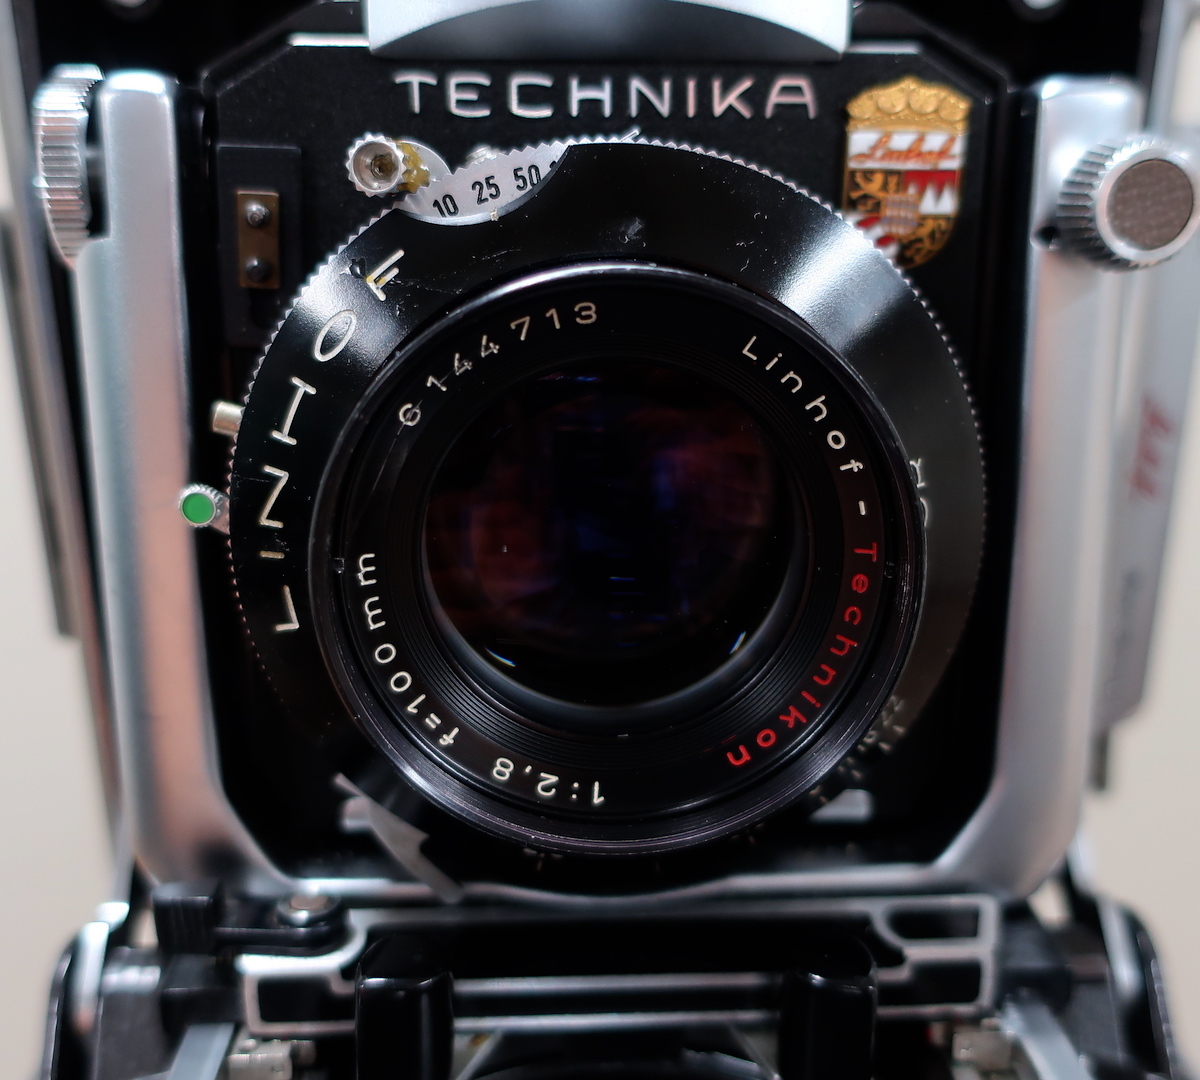 Linhof Technika 70 (リンホフ テヒニカ 70) ジャンク パーツ取り 部品どり 補修パーツ - カメラ、光学機器